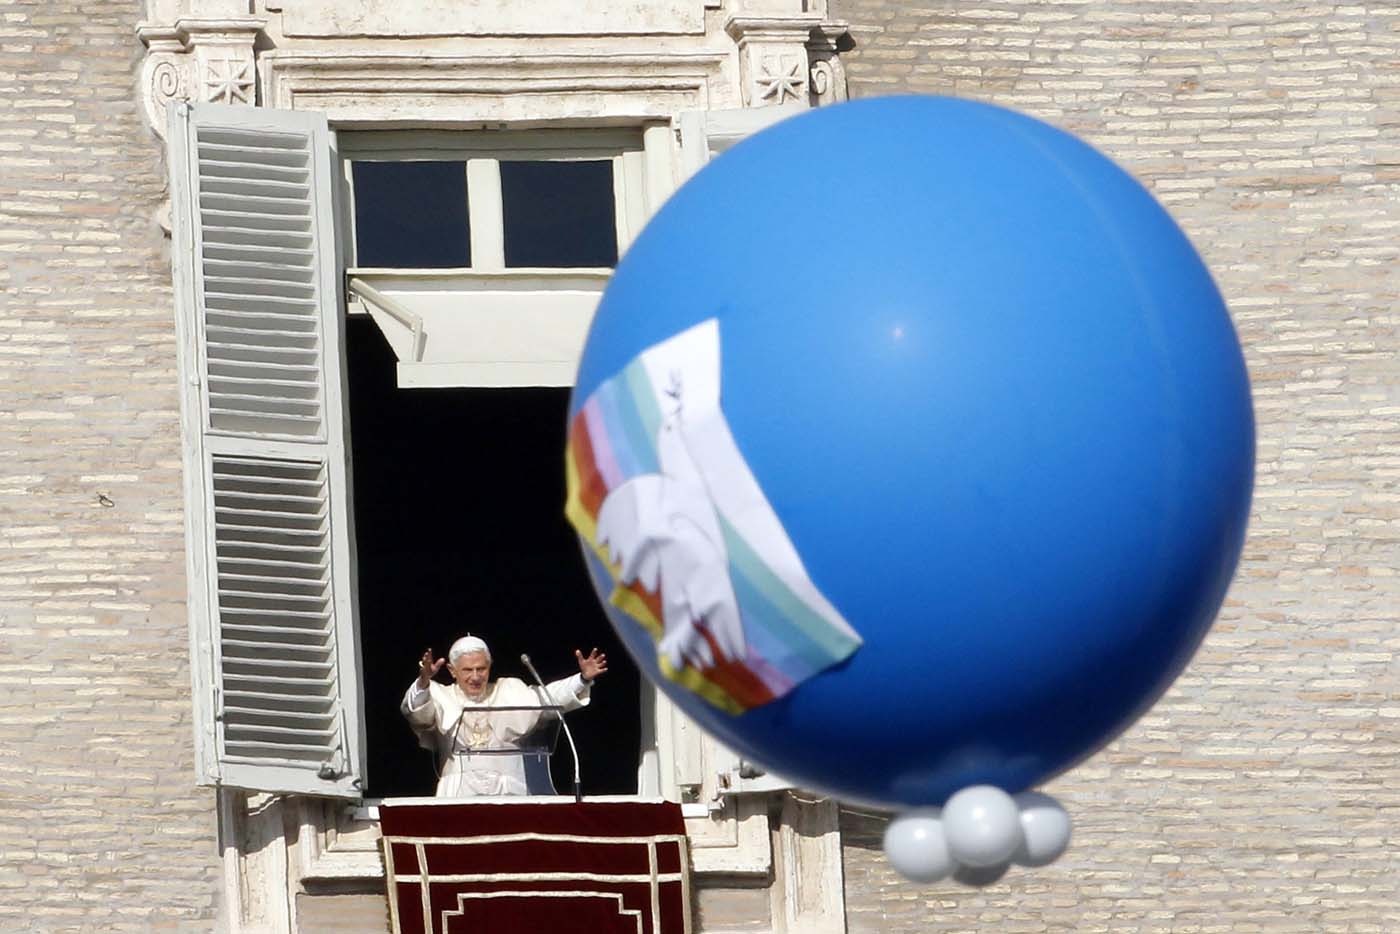 El Papa dice que los pacificadores son muchos, pero no hacen ruido